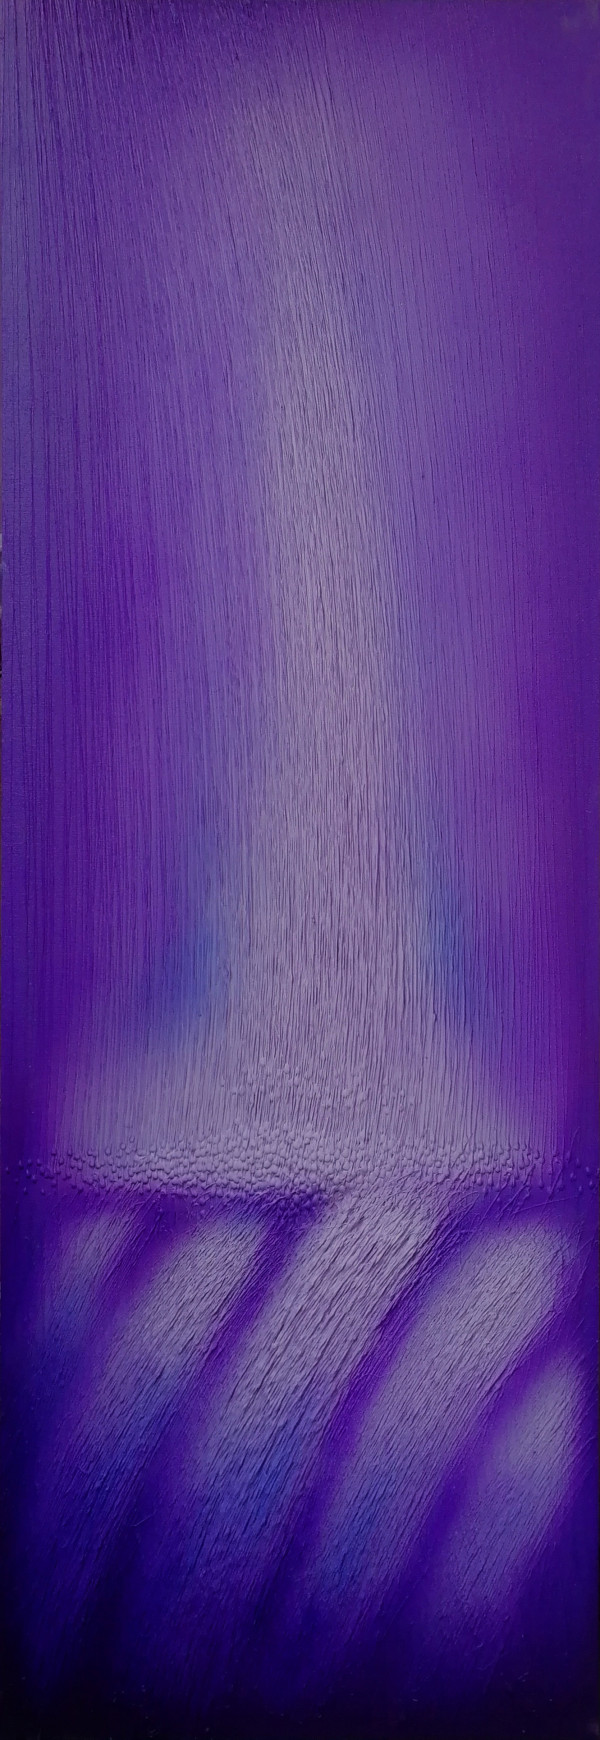 交织--紫色风暴